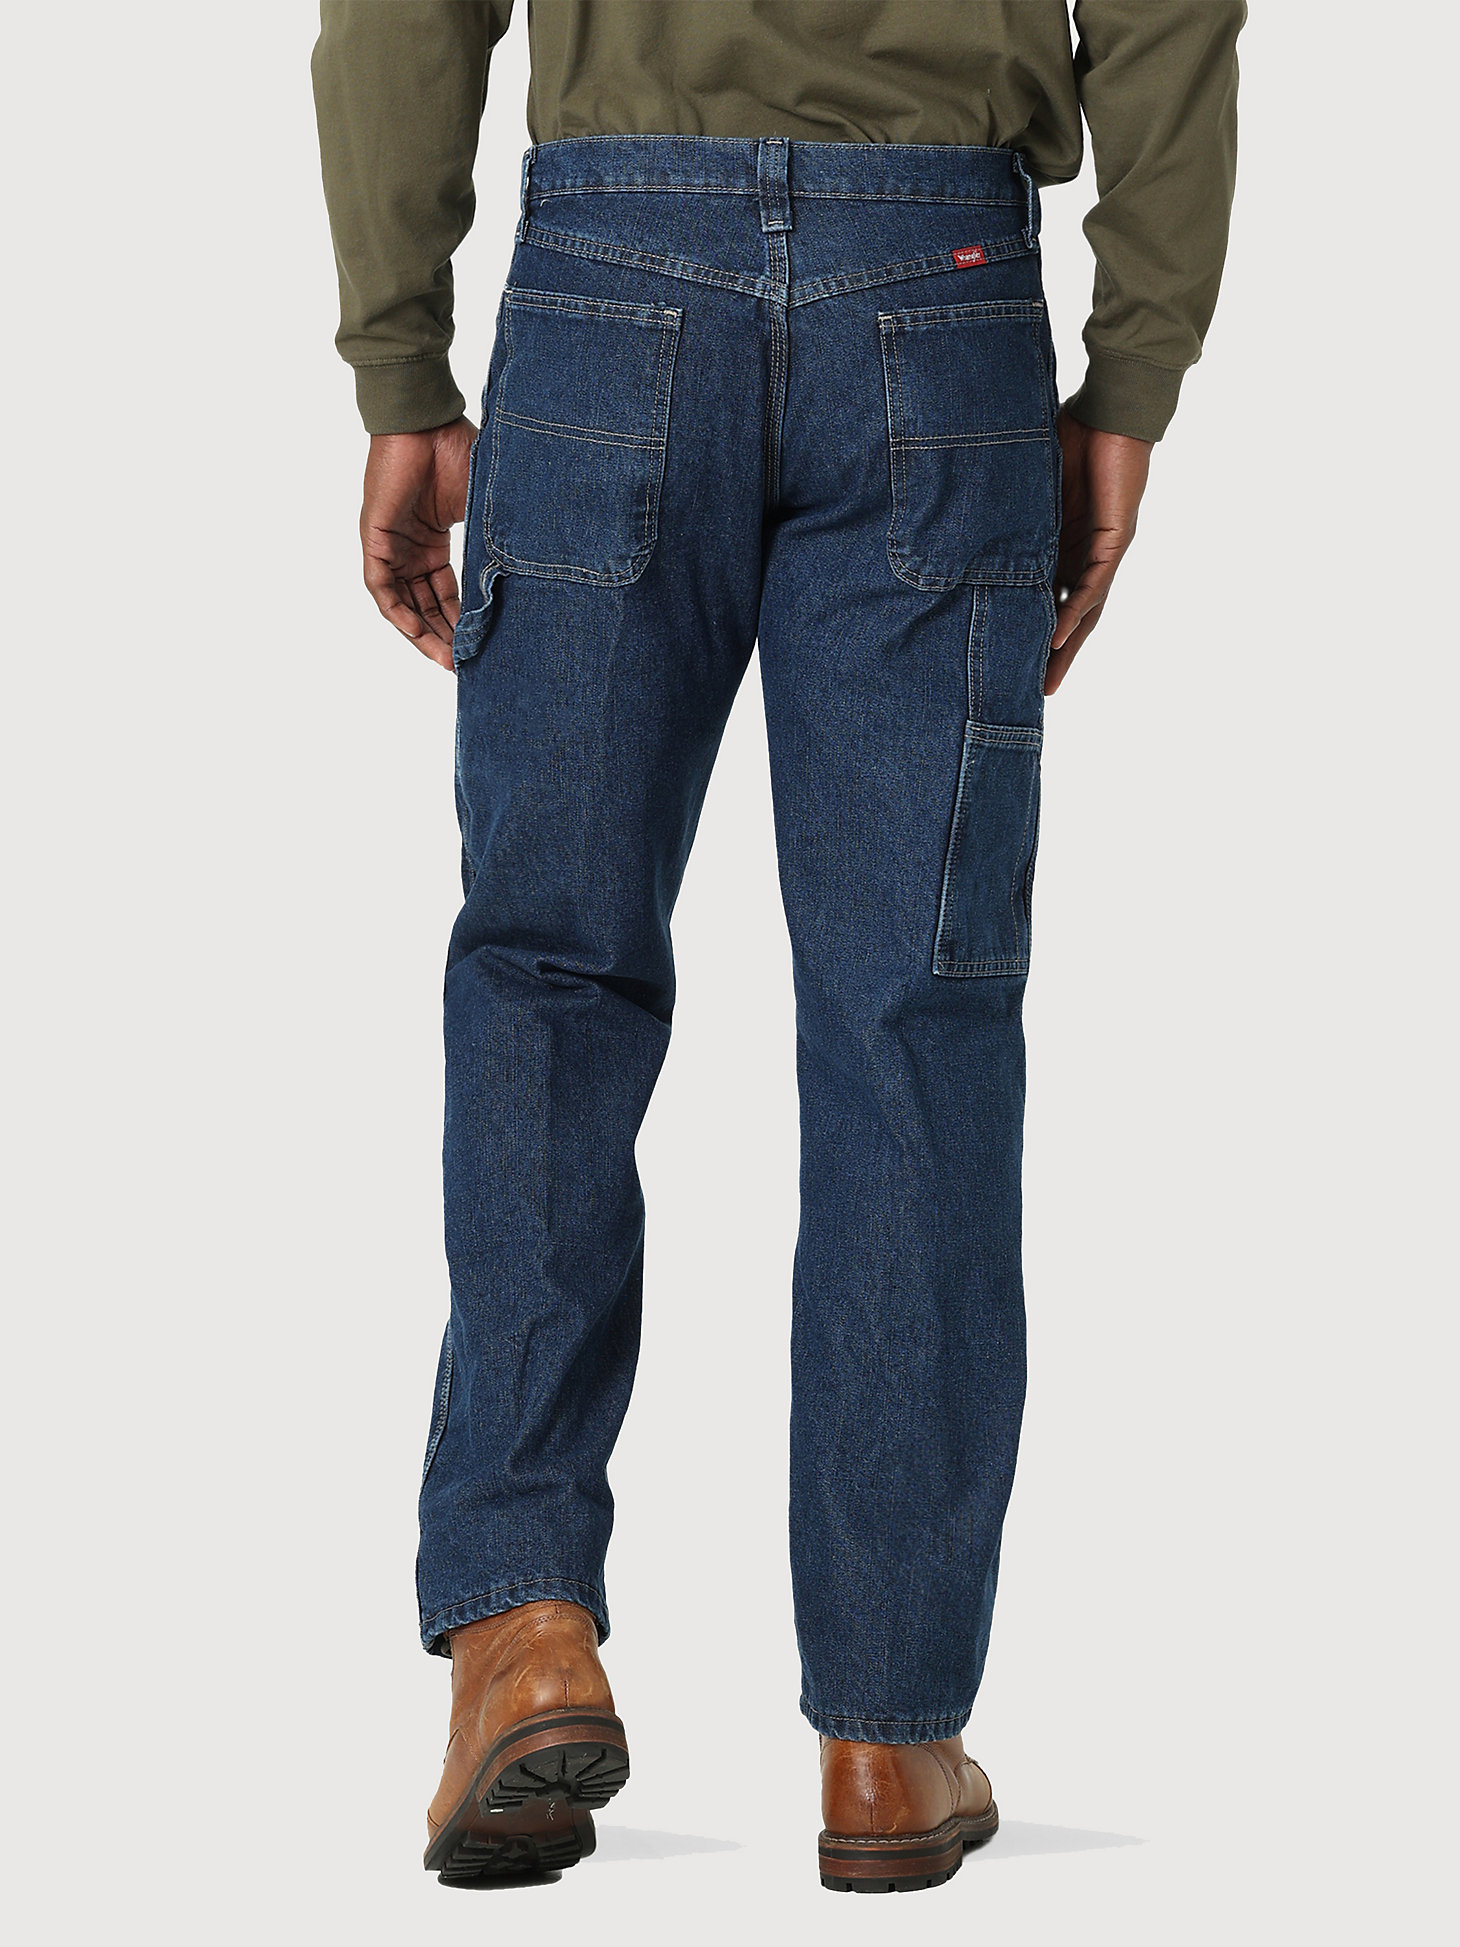 Wrangler® Fleece Lined Carpenter Jean in Dark Stone alternative view 1